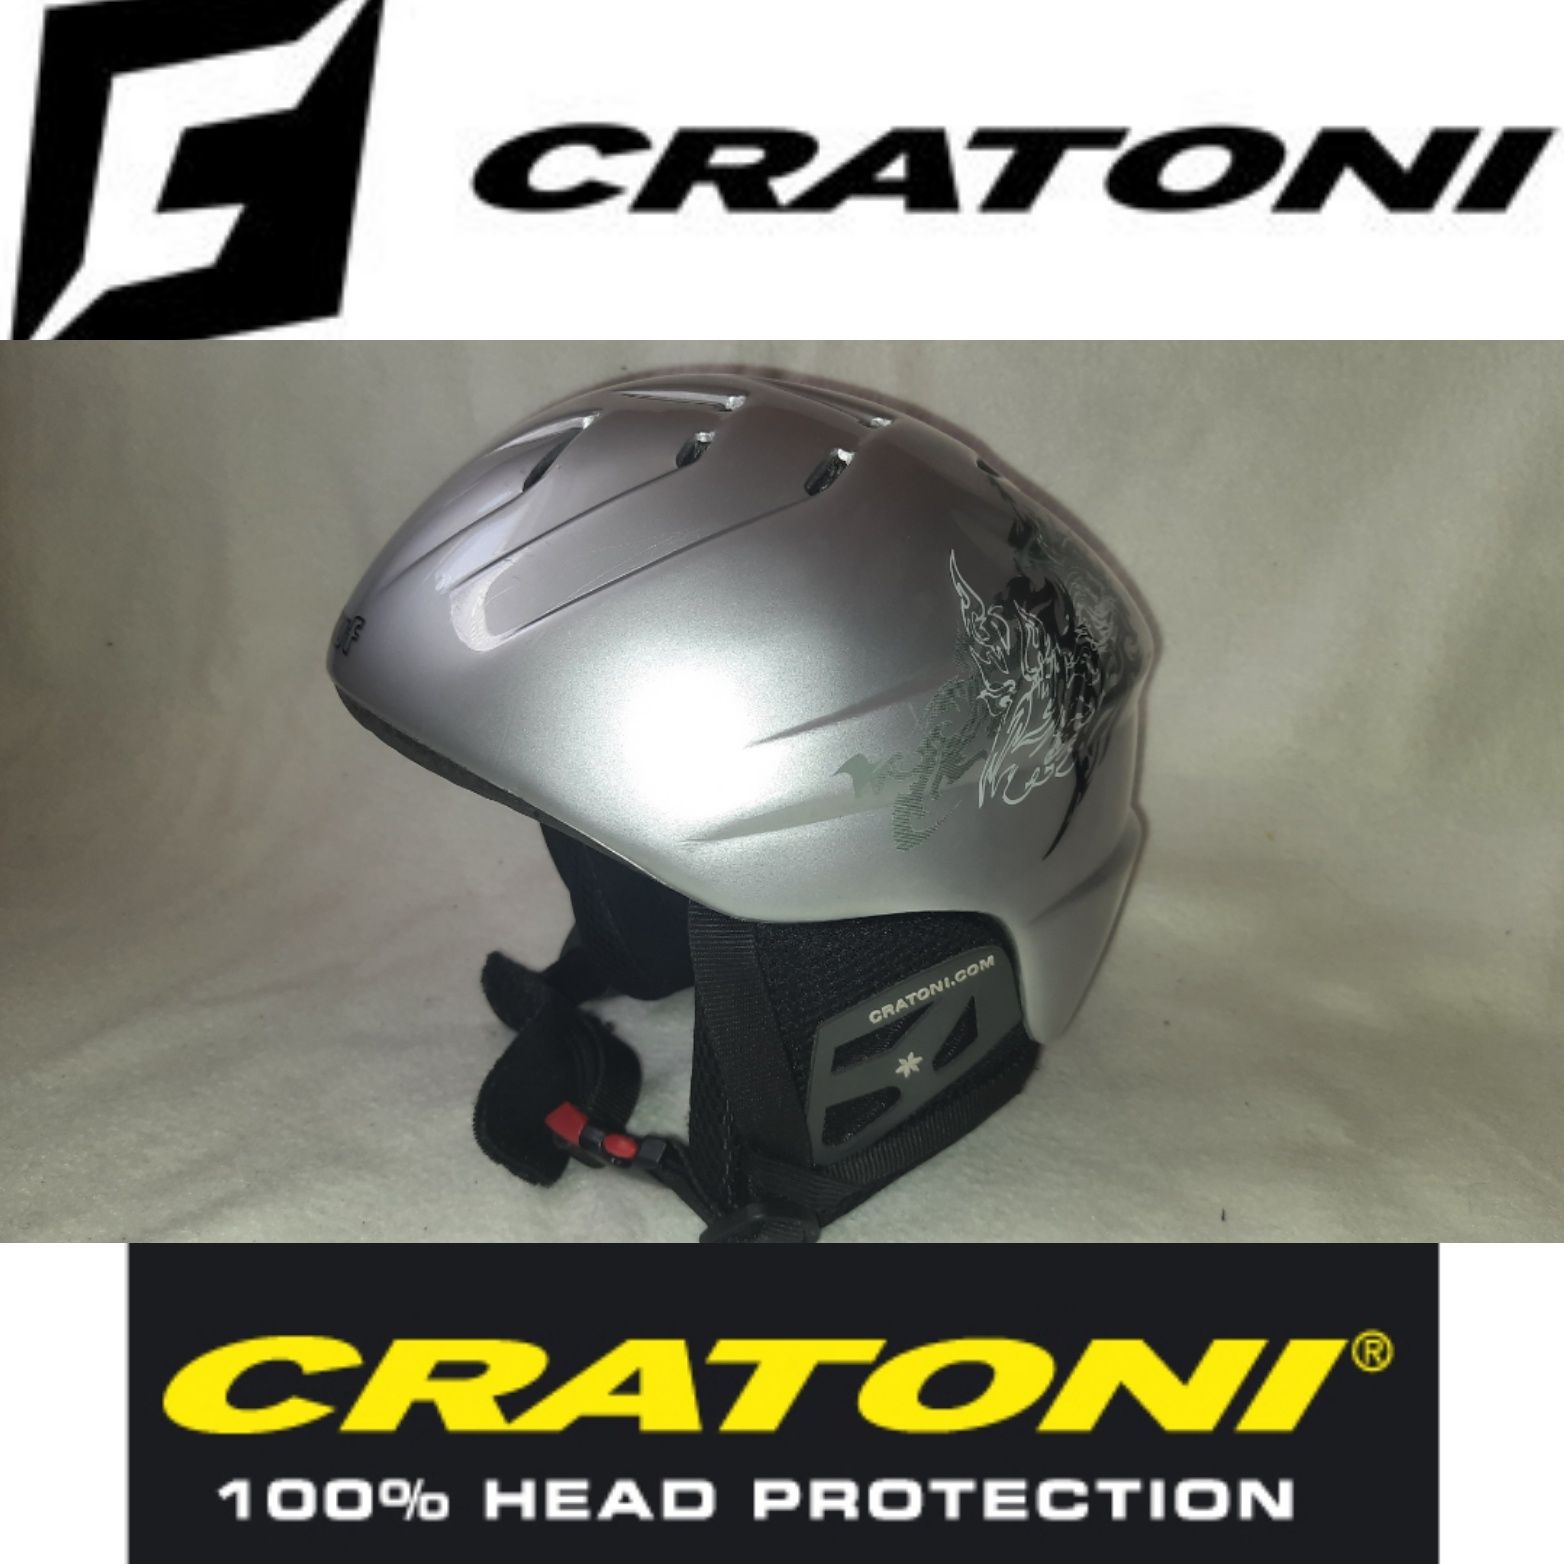 Горнолыжный шлем Cratoni p.S (52-54)Германия